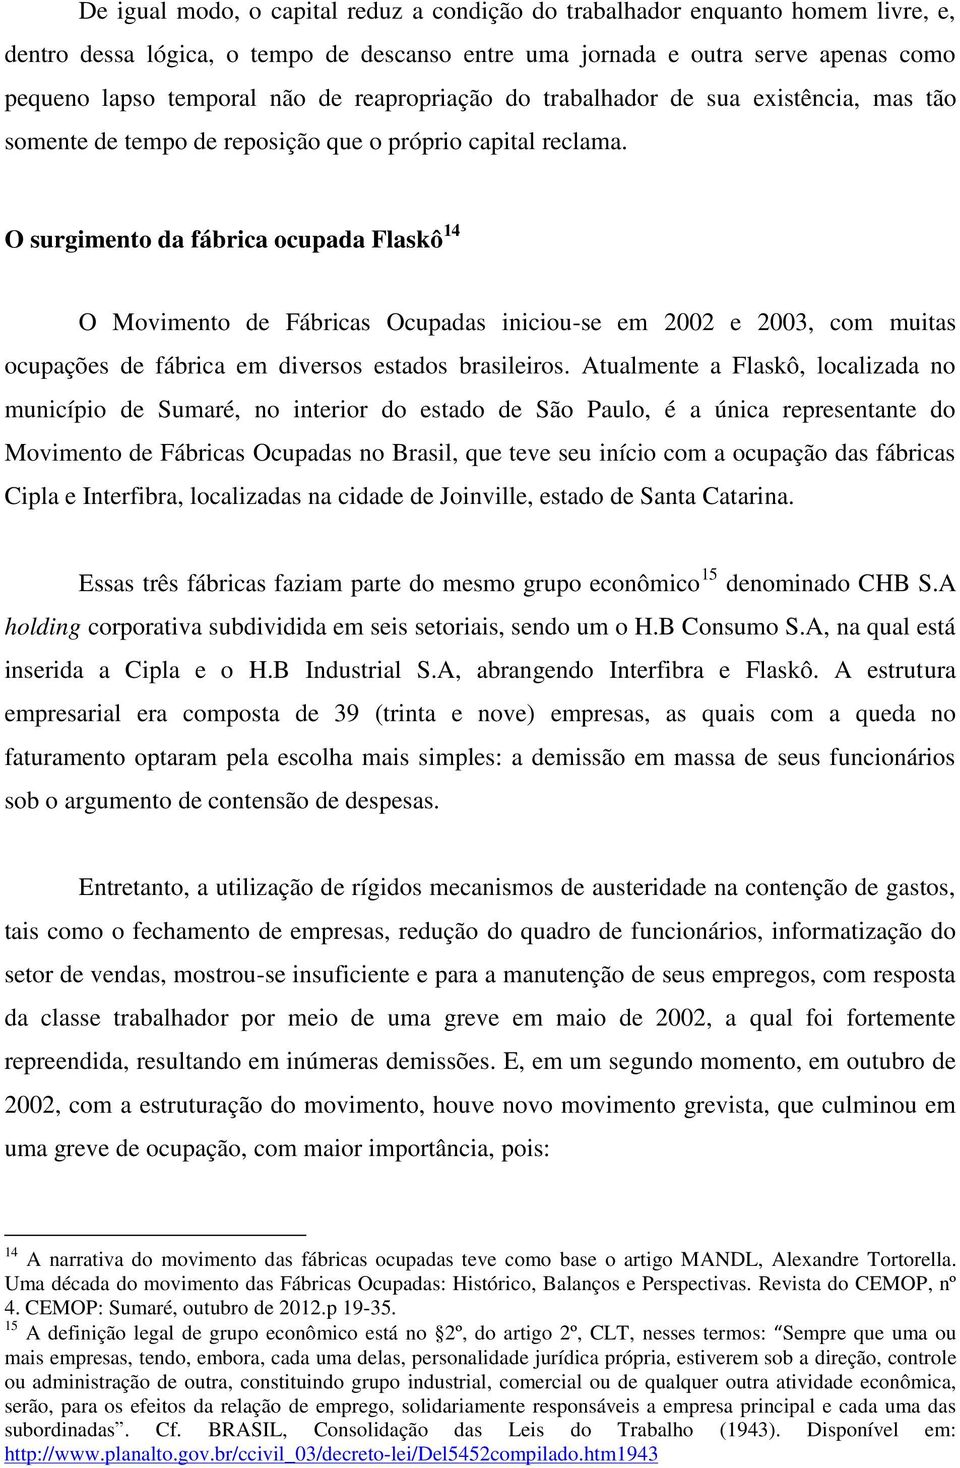 O surgimento da fábrica ocupada Flaskô 14 O Movimento de Fábricas Ocupadas iniciou-se em 2002 e 2003, com muitas ocupações de fábrica em diversos estados brasileiros.